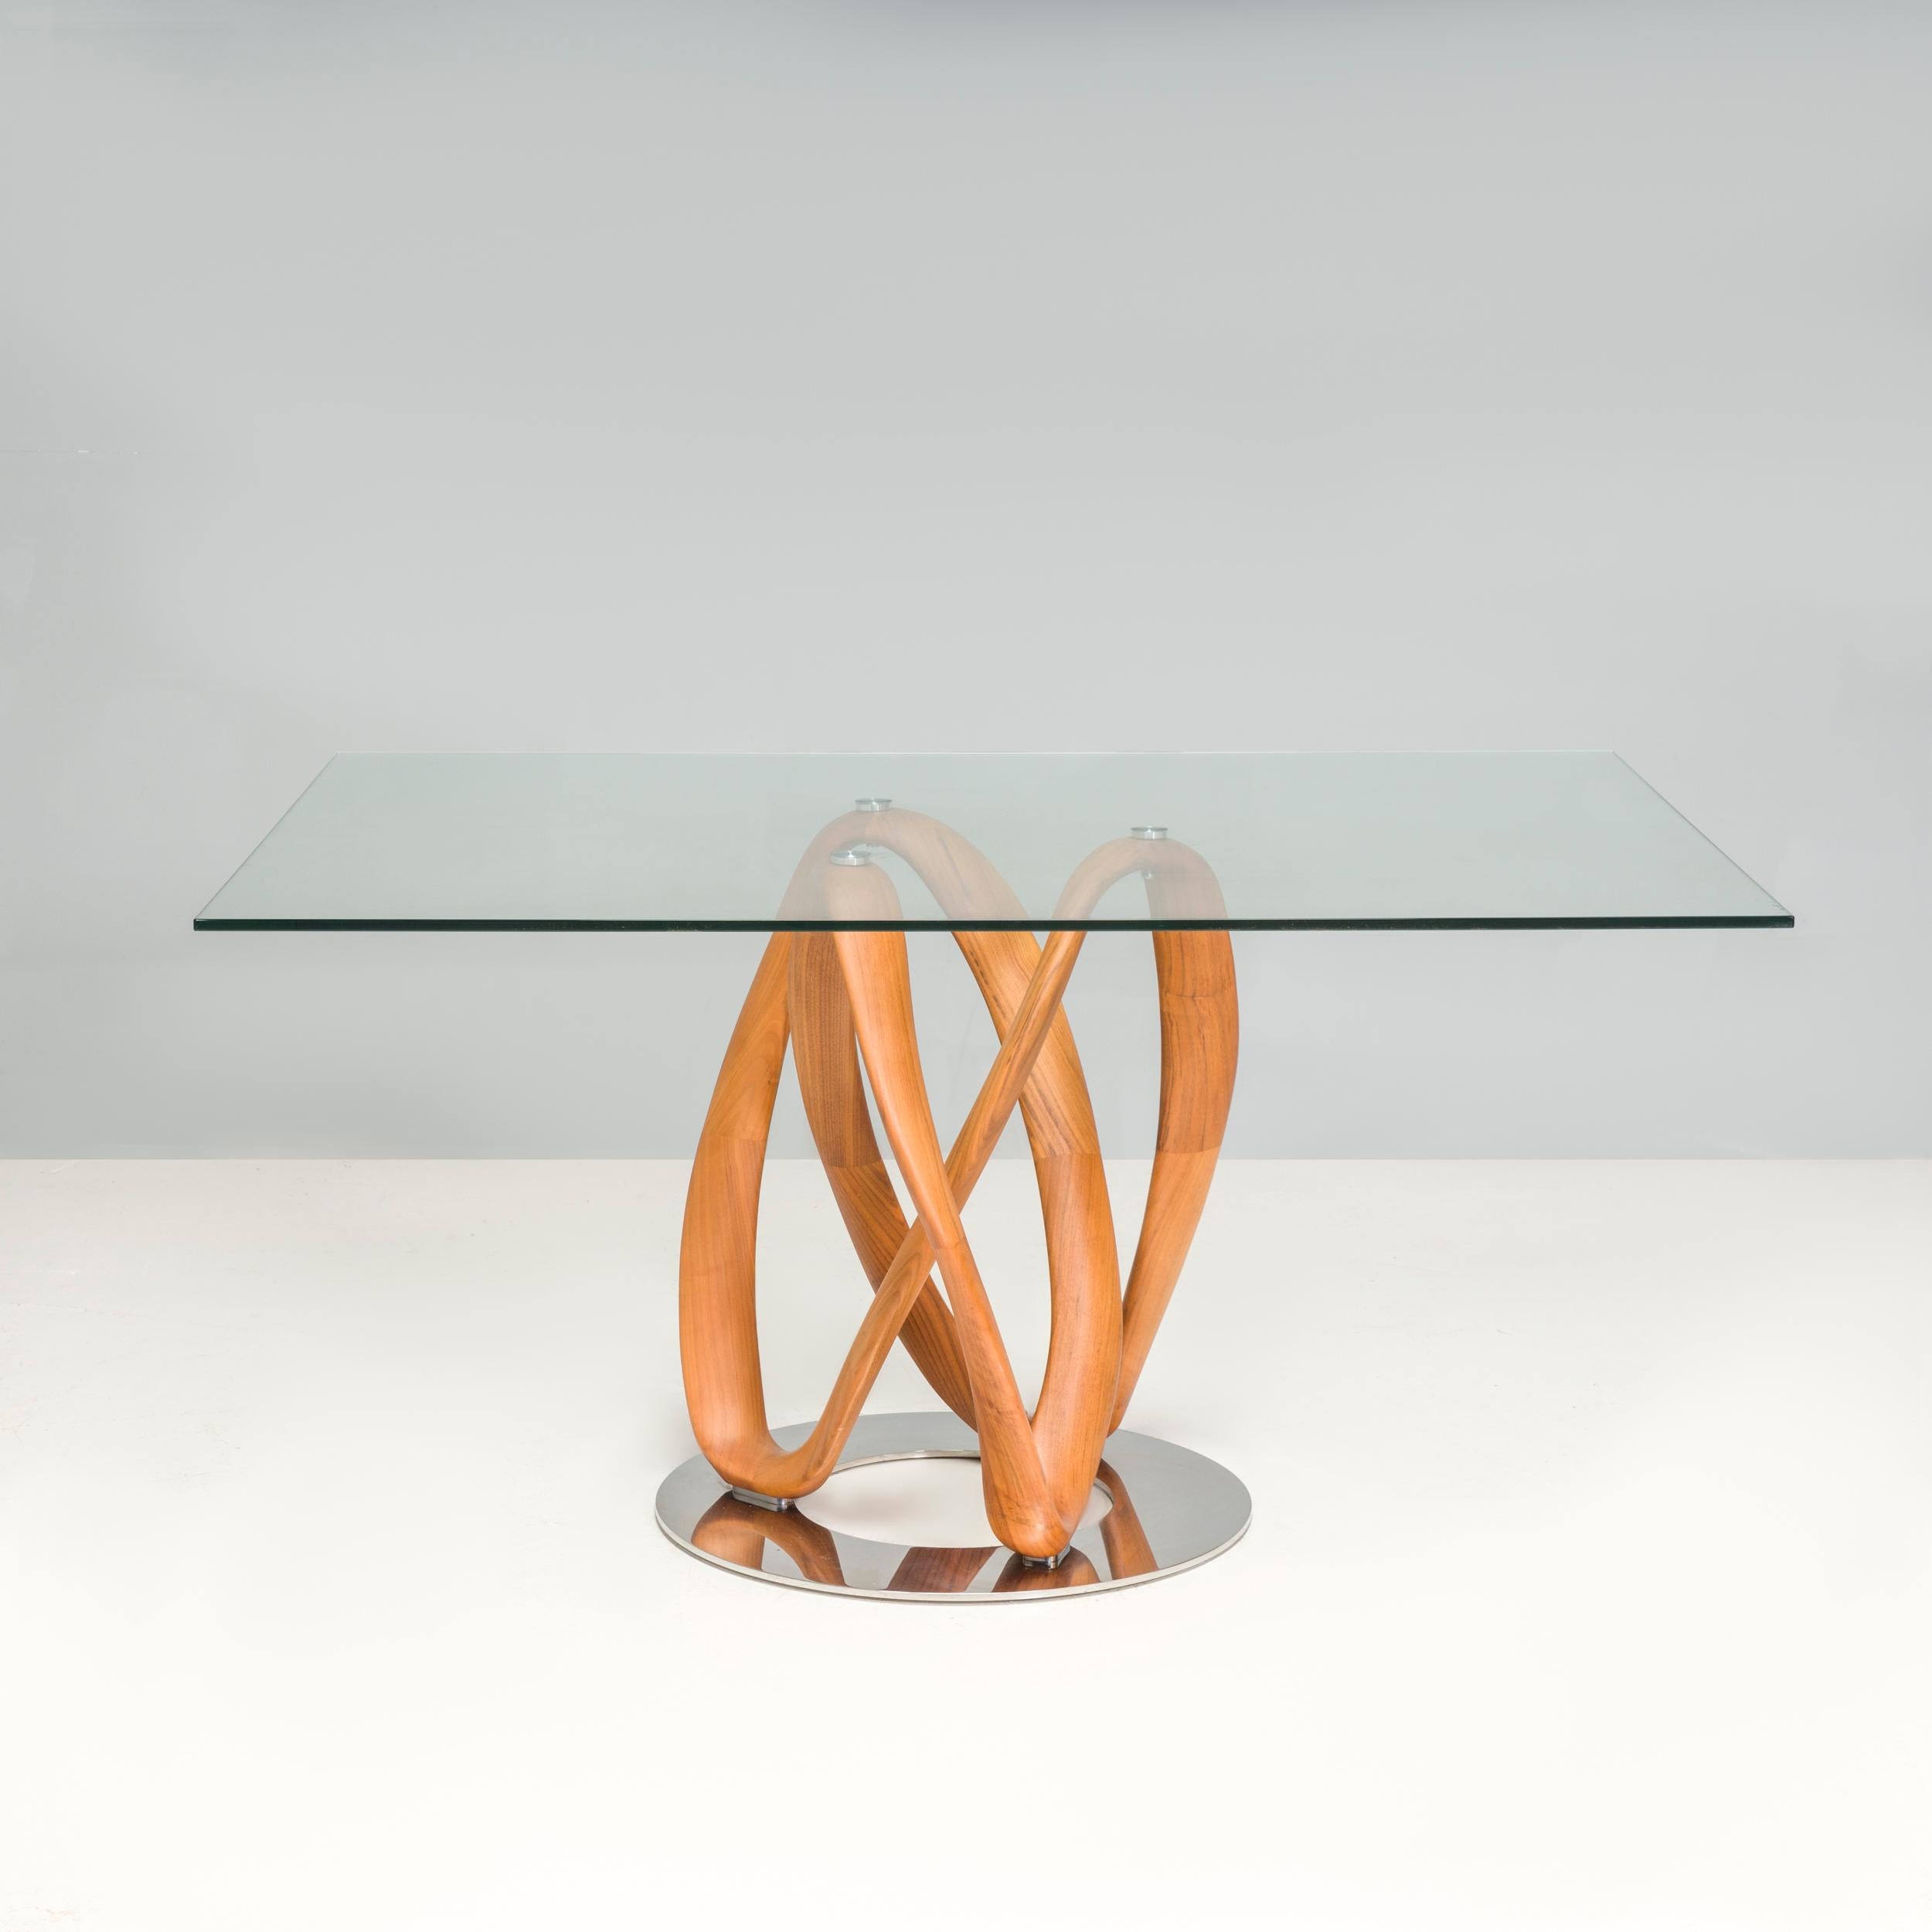 Der Infinity-Tisch wurde 2009 von Stefano Bigi für Porada entworfen und wird in aufwändiger Handarbeit in der Porada-Werkstatt in Brianza hergestellt. Der Tisch besteht aus einem Untergestell aus Canaletta-Walnussholz mit einer gedrehten Form, die